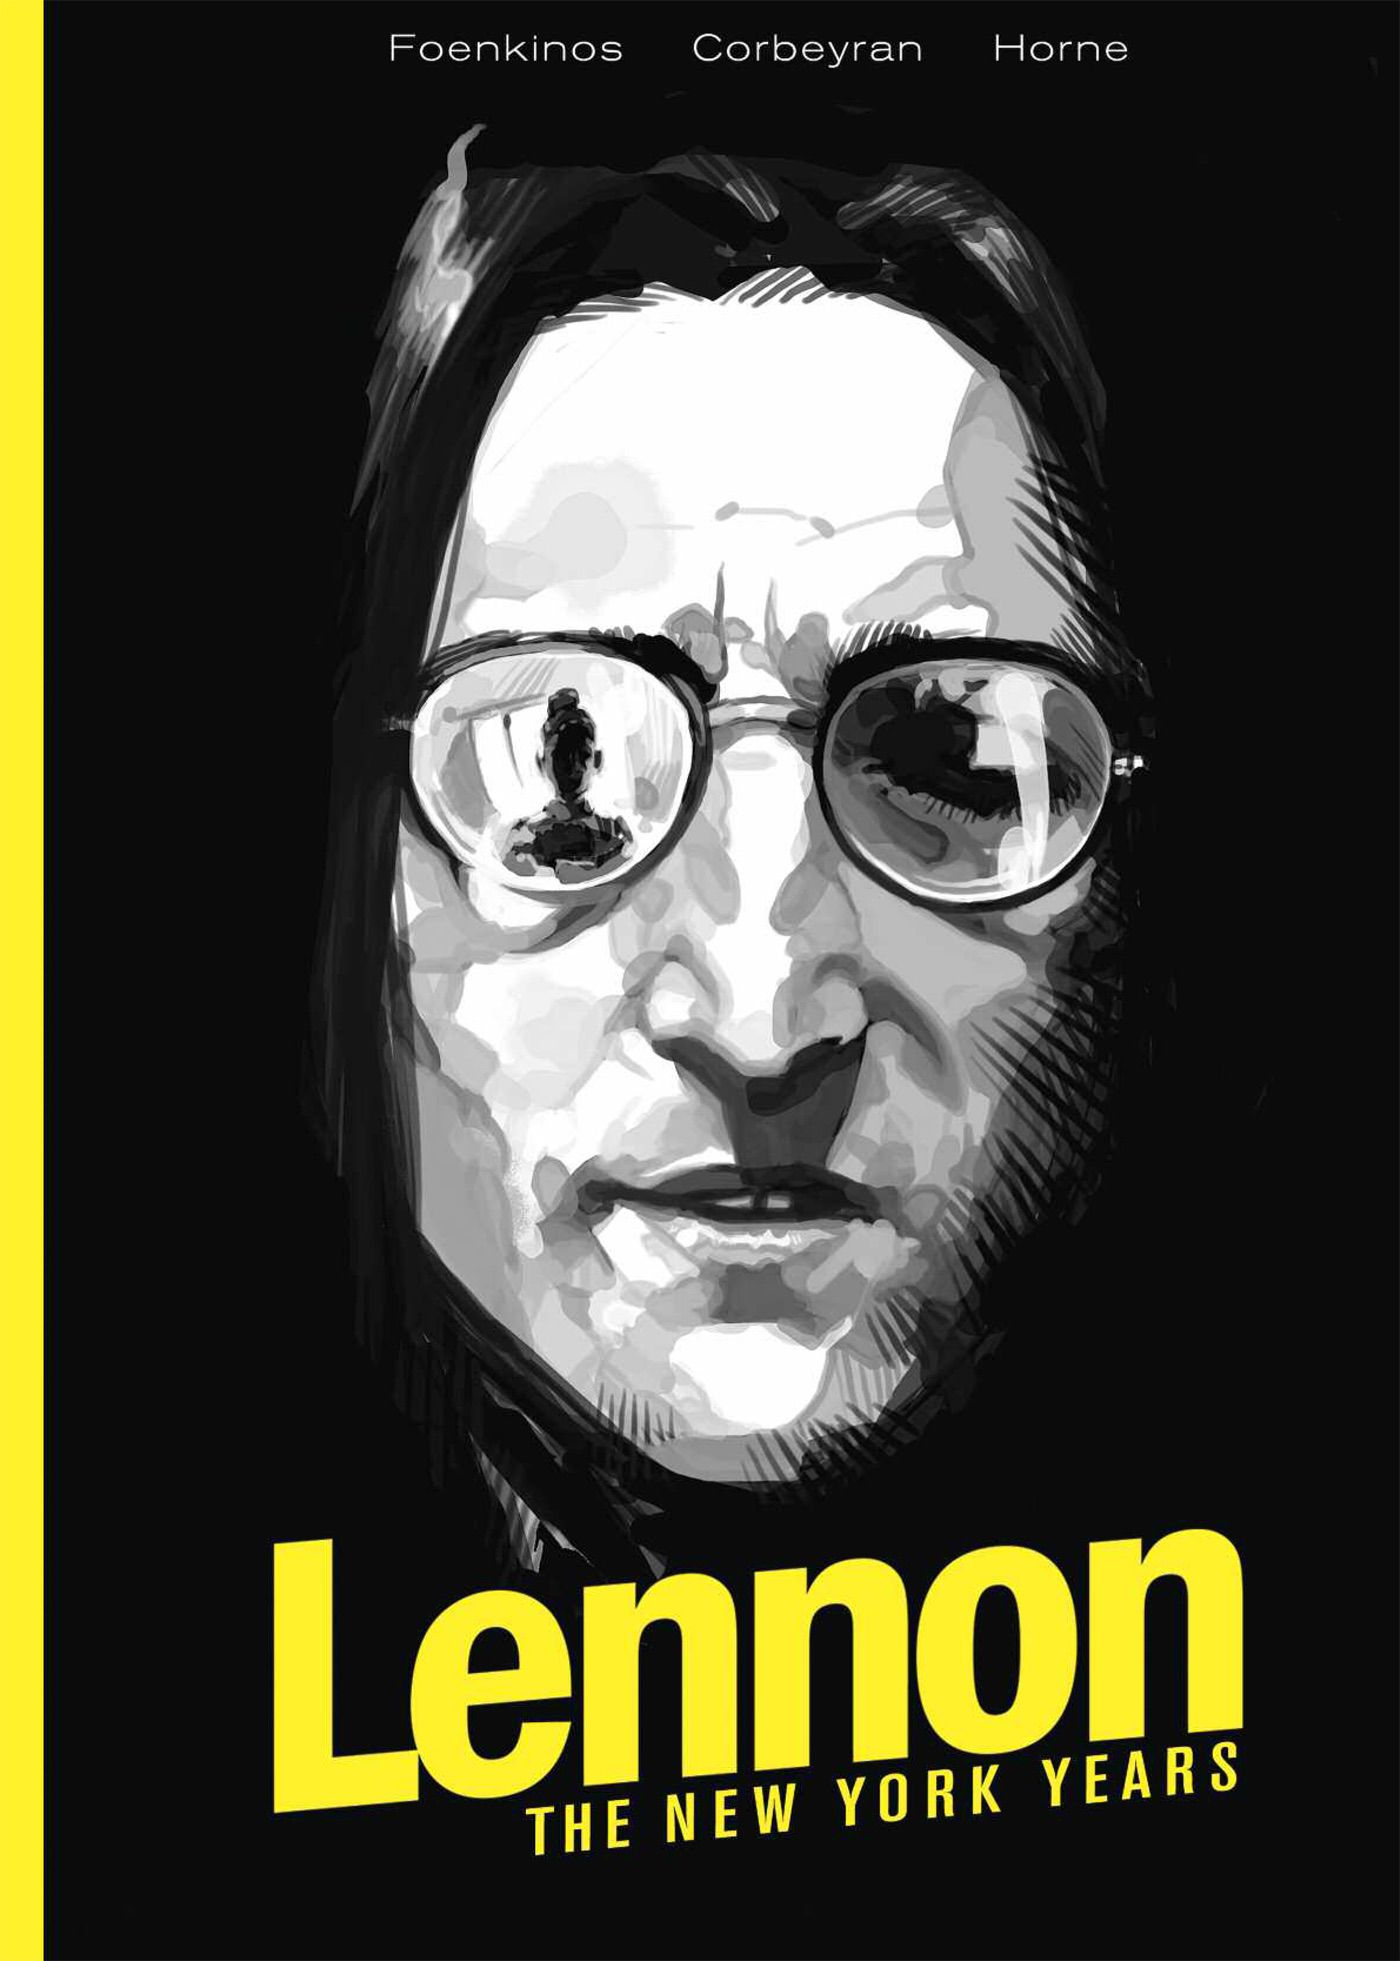 lennon hc cvr prh Graphic novel recounting John Lennons New York years previewed in new trailer    watch